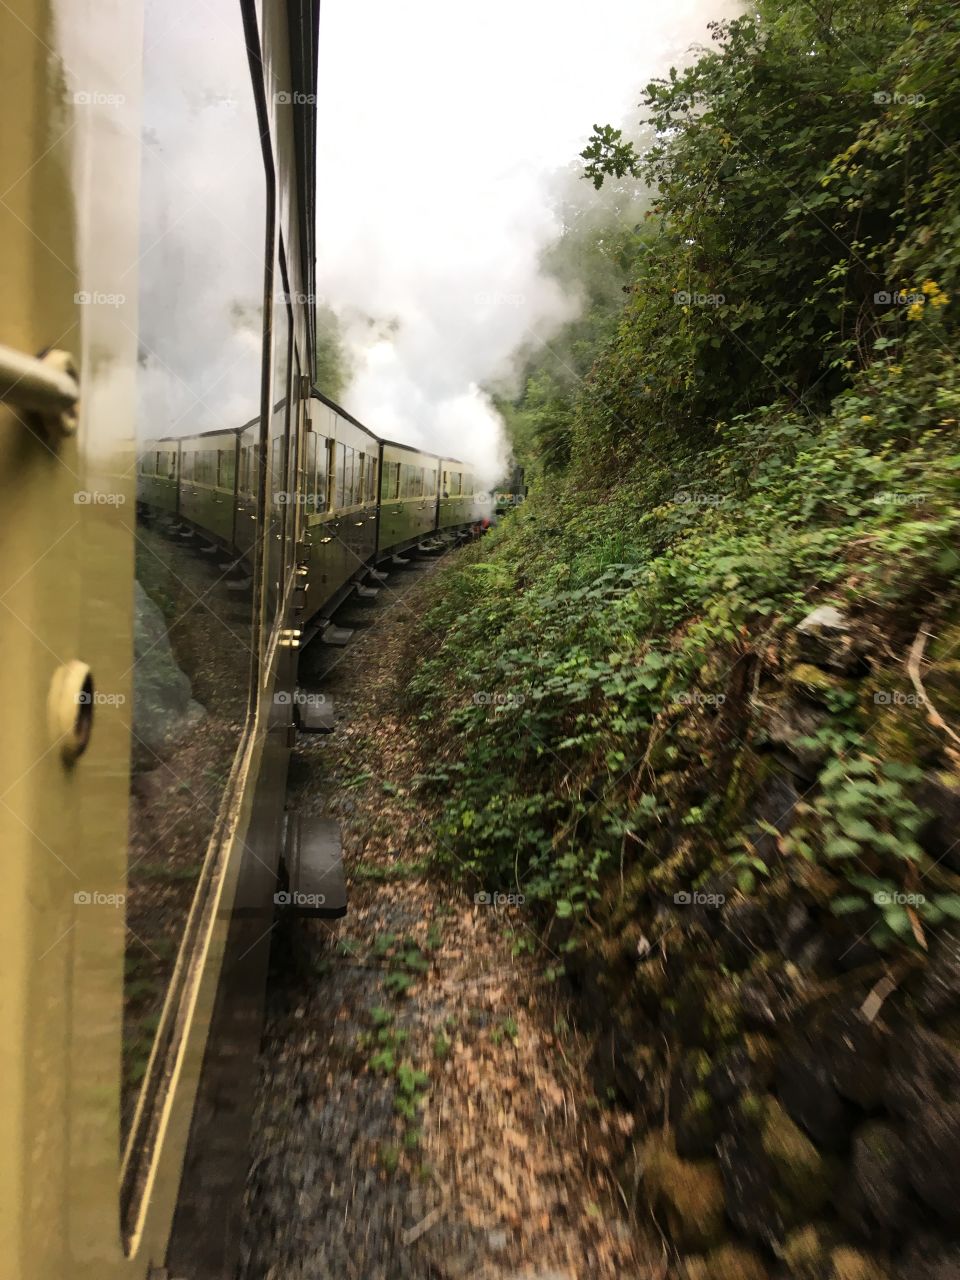 Km steam train journey 